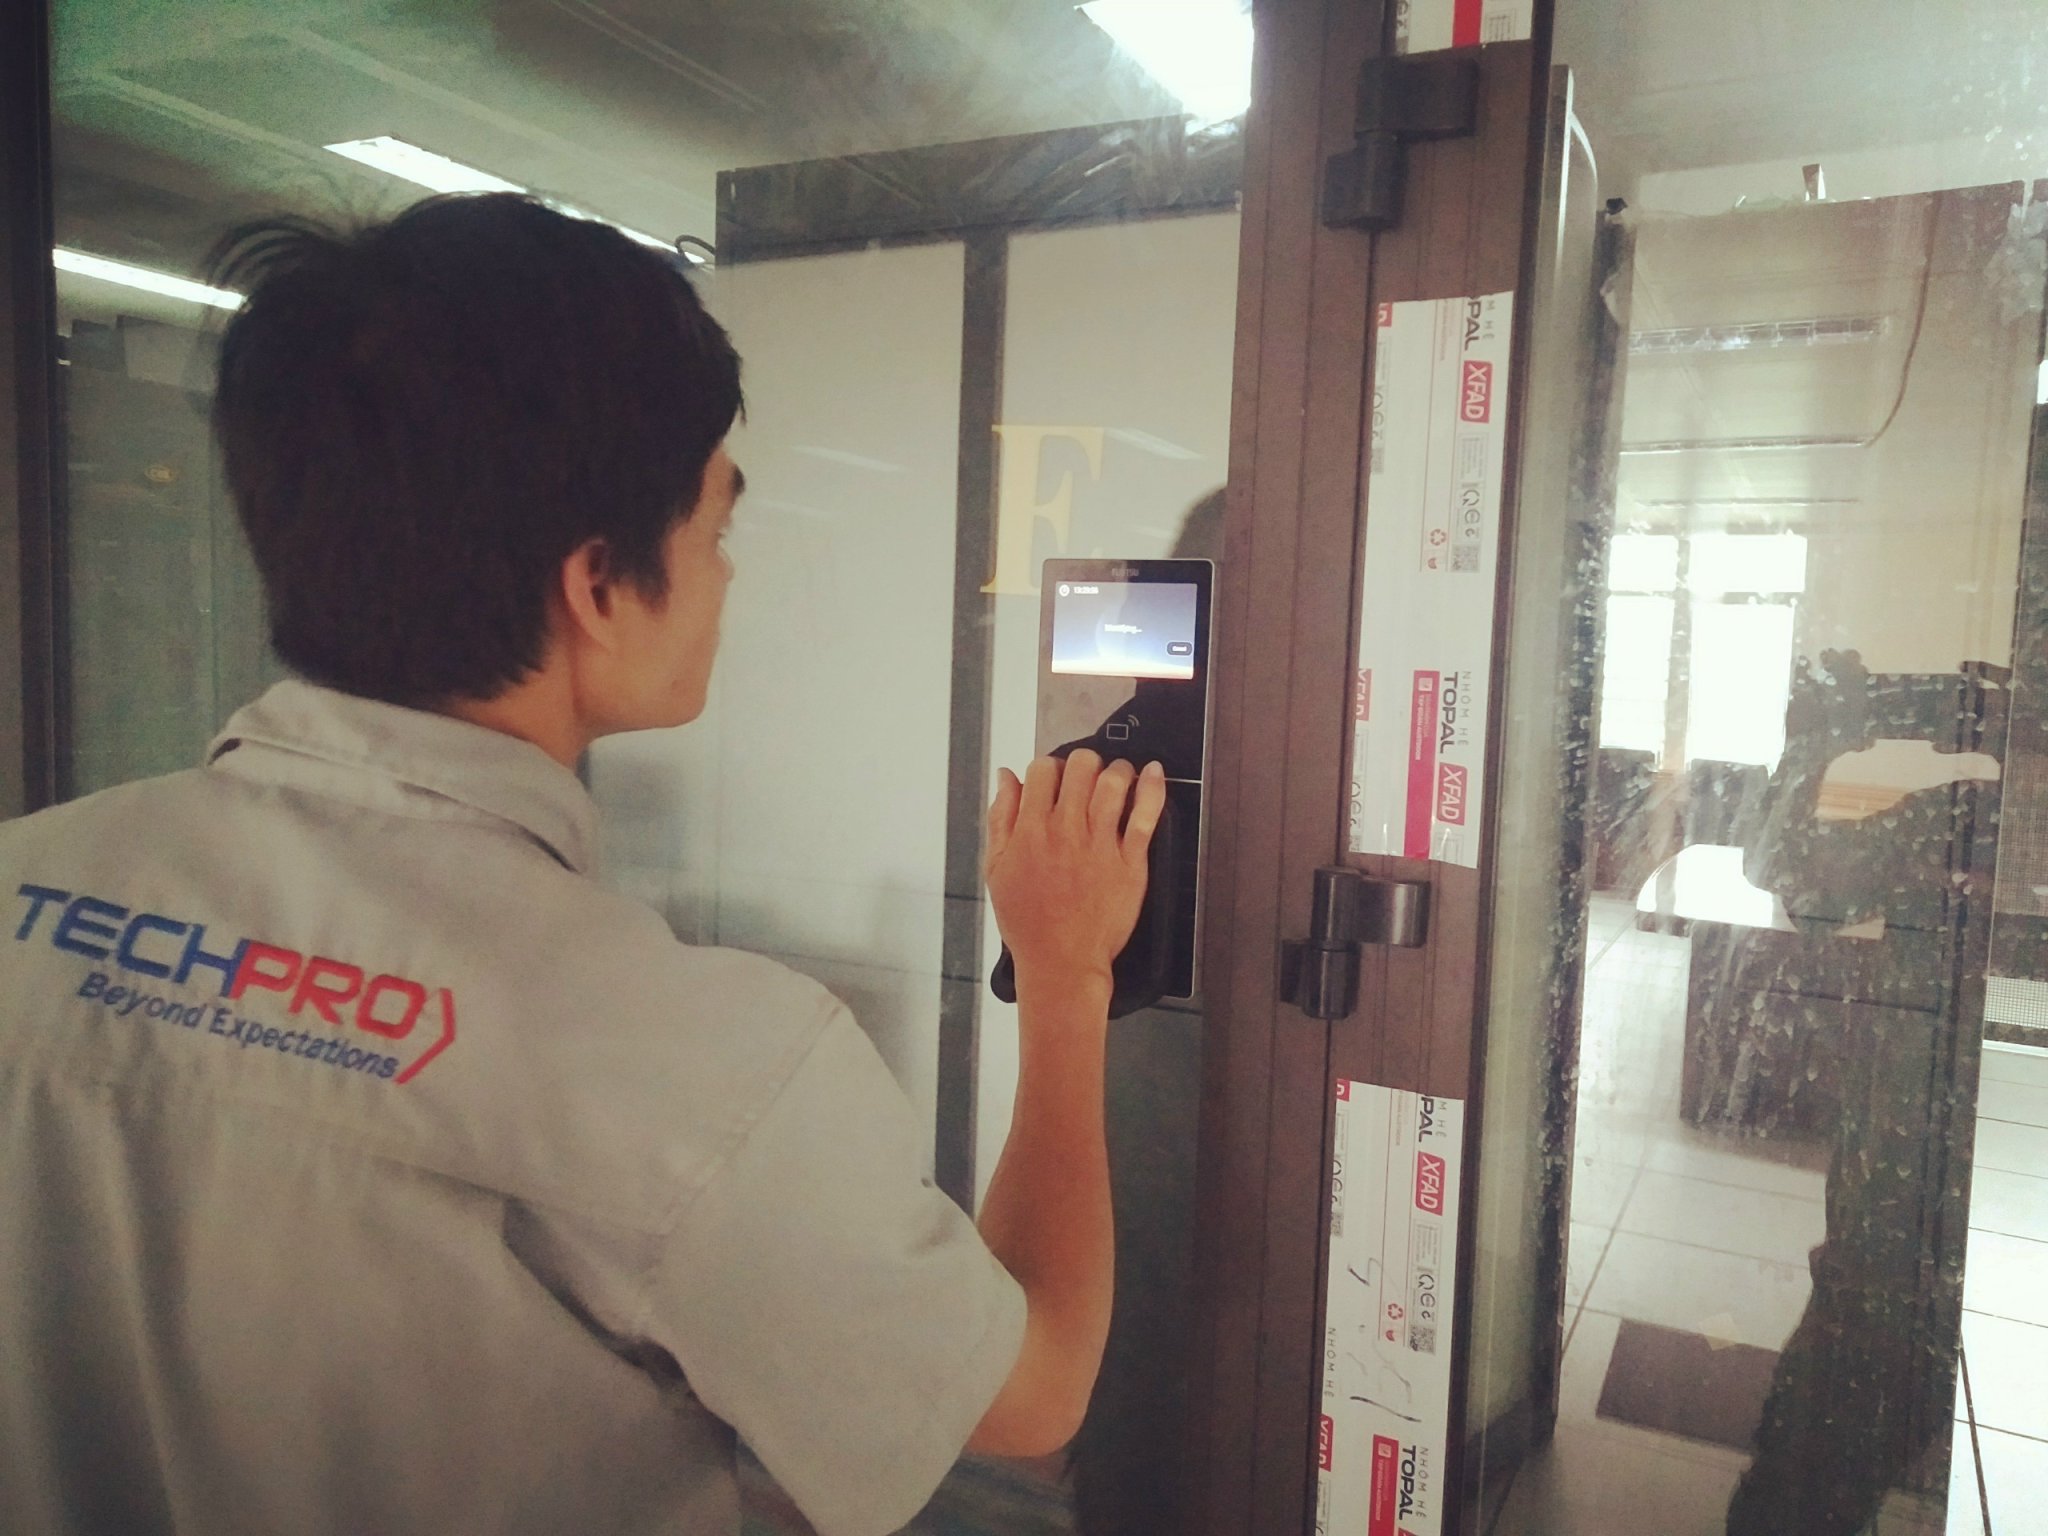 TECHPRO triển khai dự án lắp đặt hệ thống kiểm soát ra vào cho trung tâm internet Việt Nam - khu CNC Láng Hòa Lạc